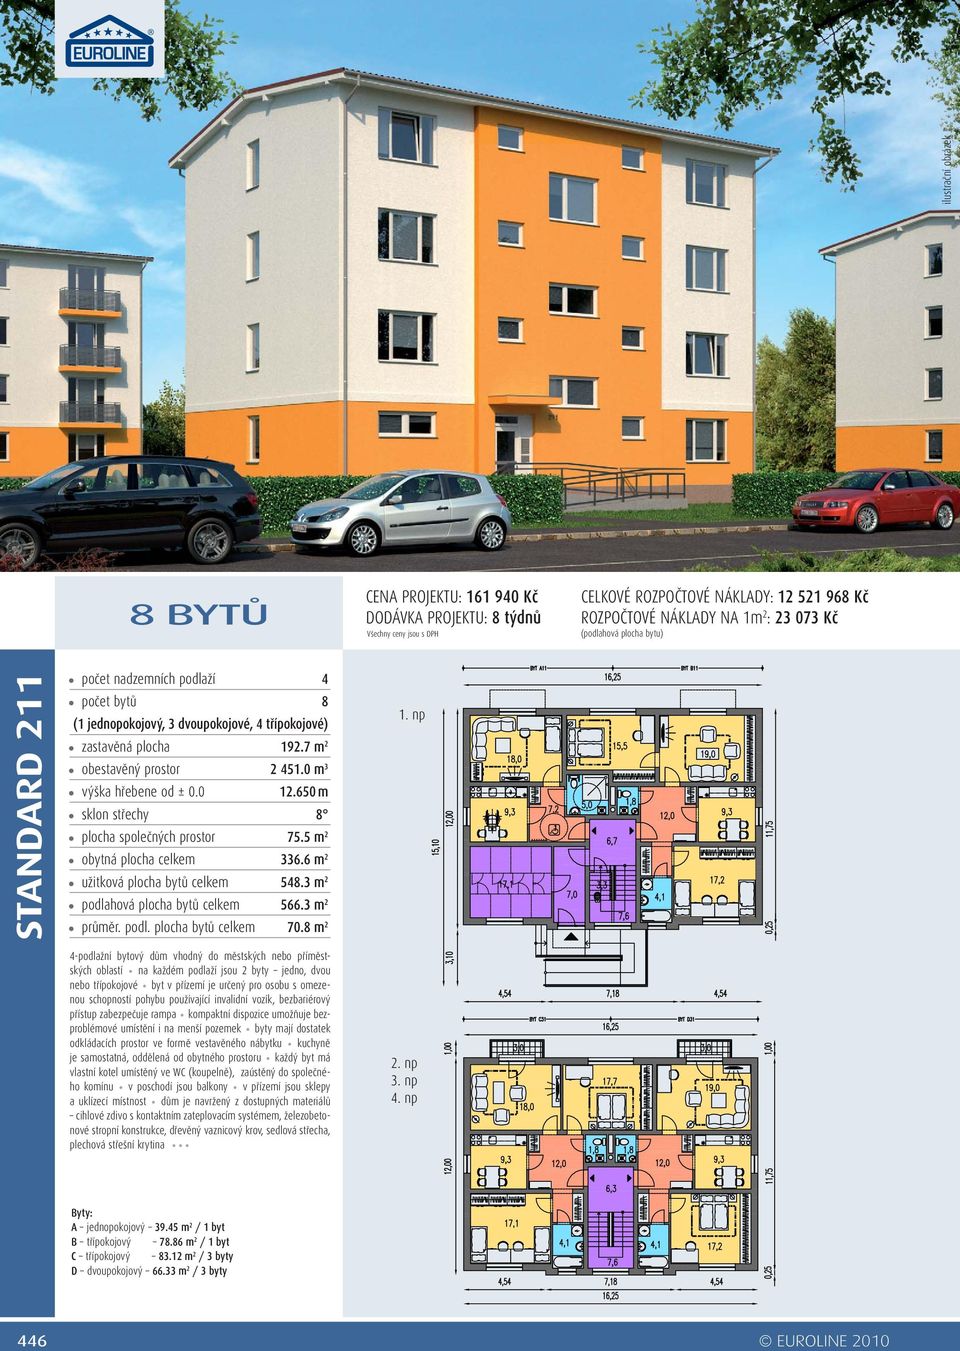 23 073 Kč -podlažní bytový dům vhodný do městských nebo příměstských oblastí na každém podlaží jsou 2 byty jedno, dvou nebo třípokojové byt v přízemí je určený pro osobu s omezenou schopností pohybu